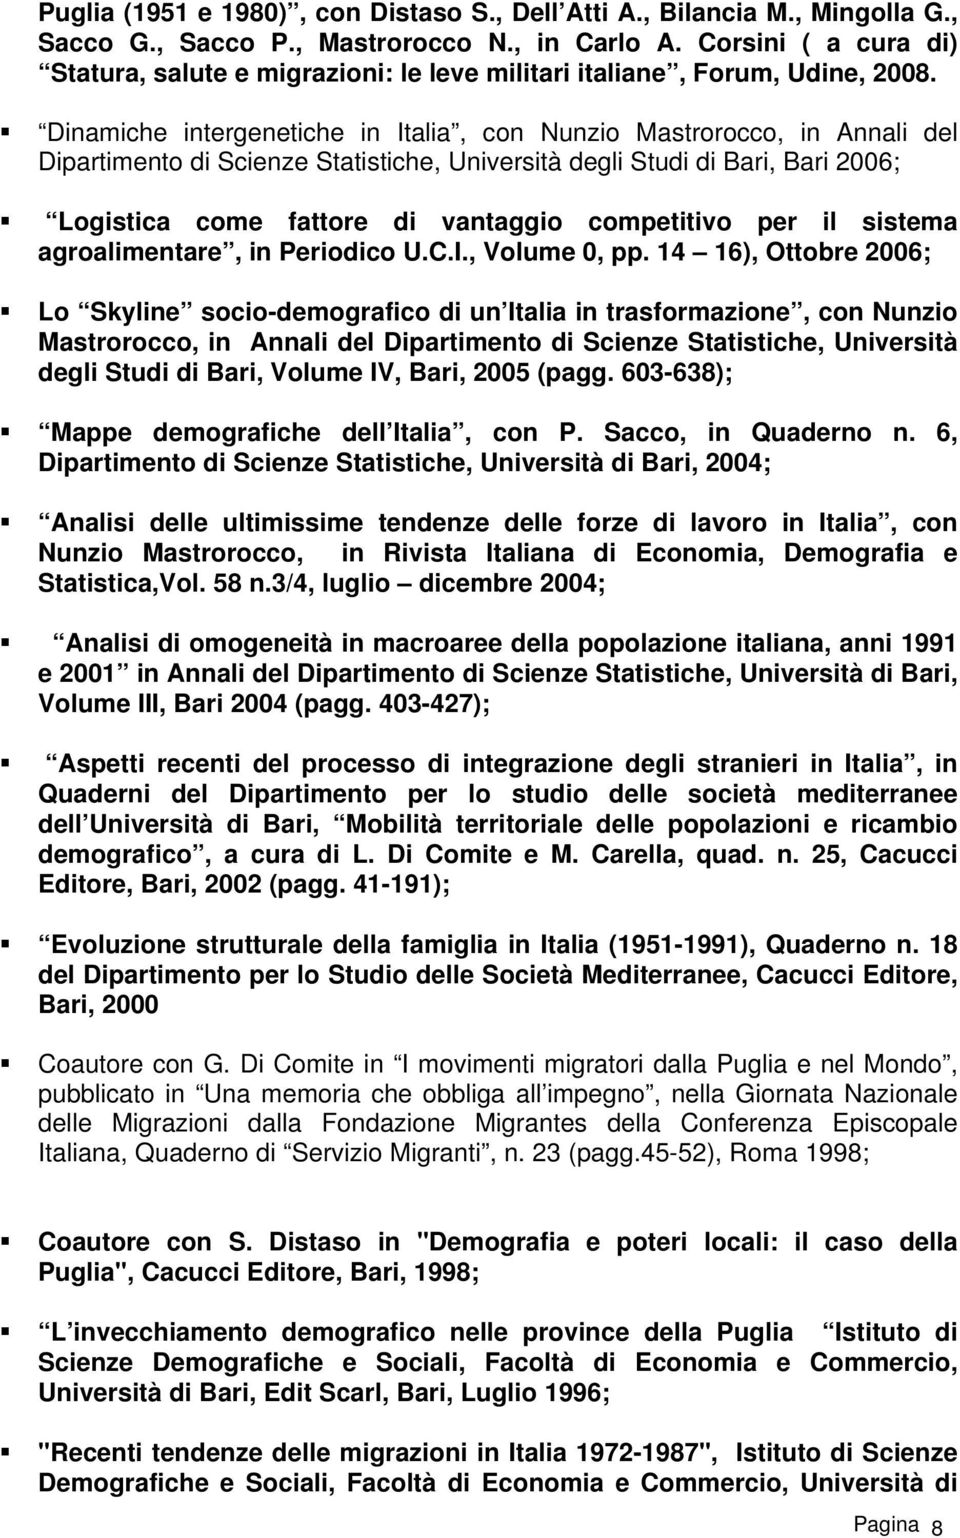 Dinamiche intergenetiche in Italia, con Nunzio Mastrorocco, in Annali del Dipartimento di Scienze Statistiche, Università degli Studi di Bari, Bari 2006; Logistica come fattore di vantaggio